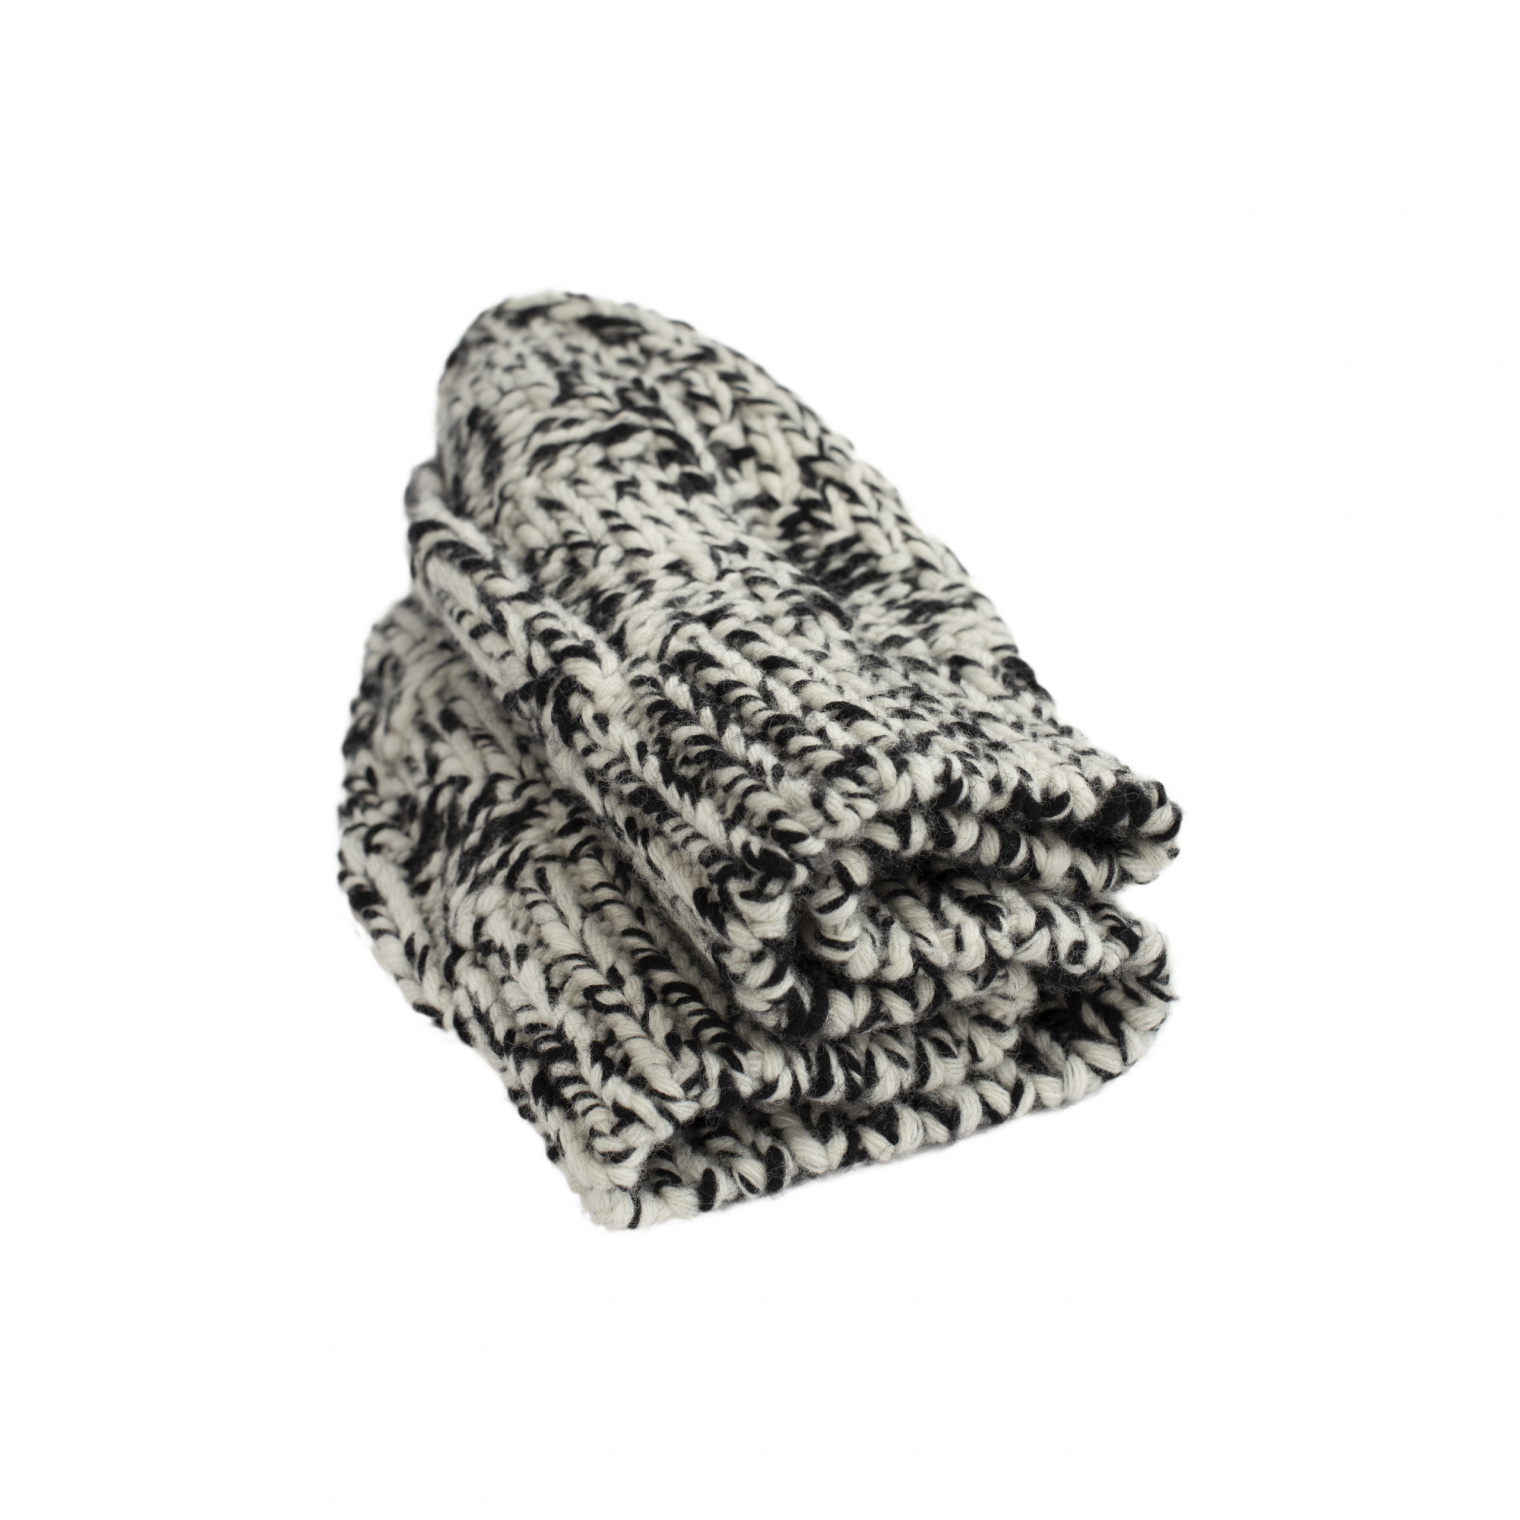 Jil Sander Two-toned wool hat